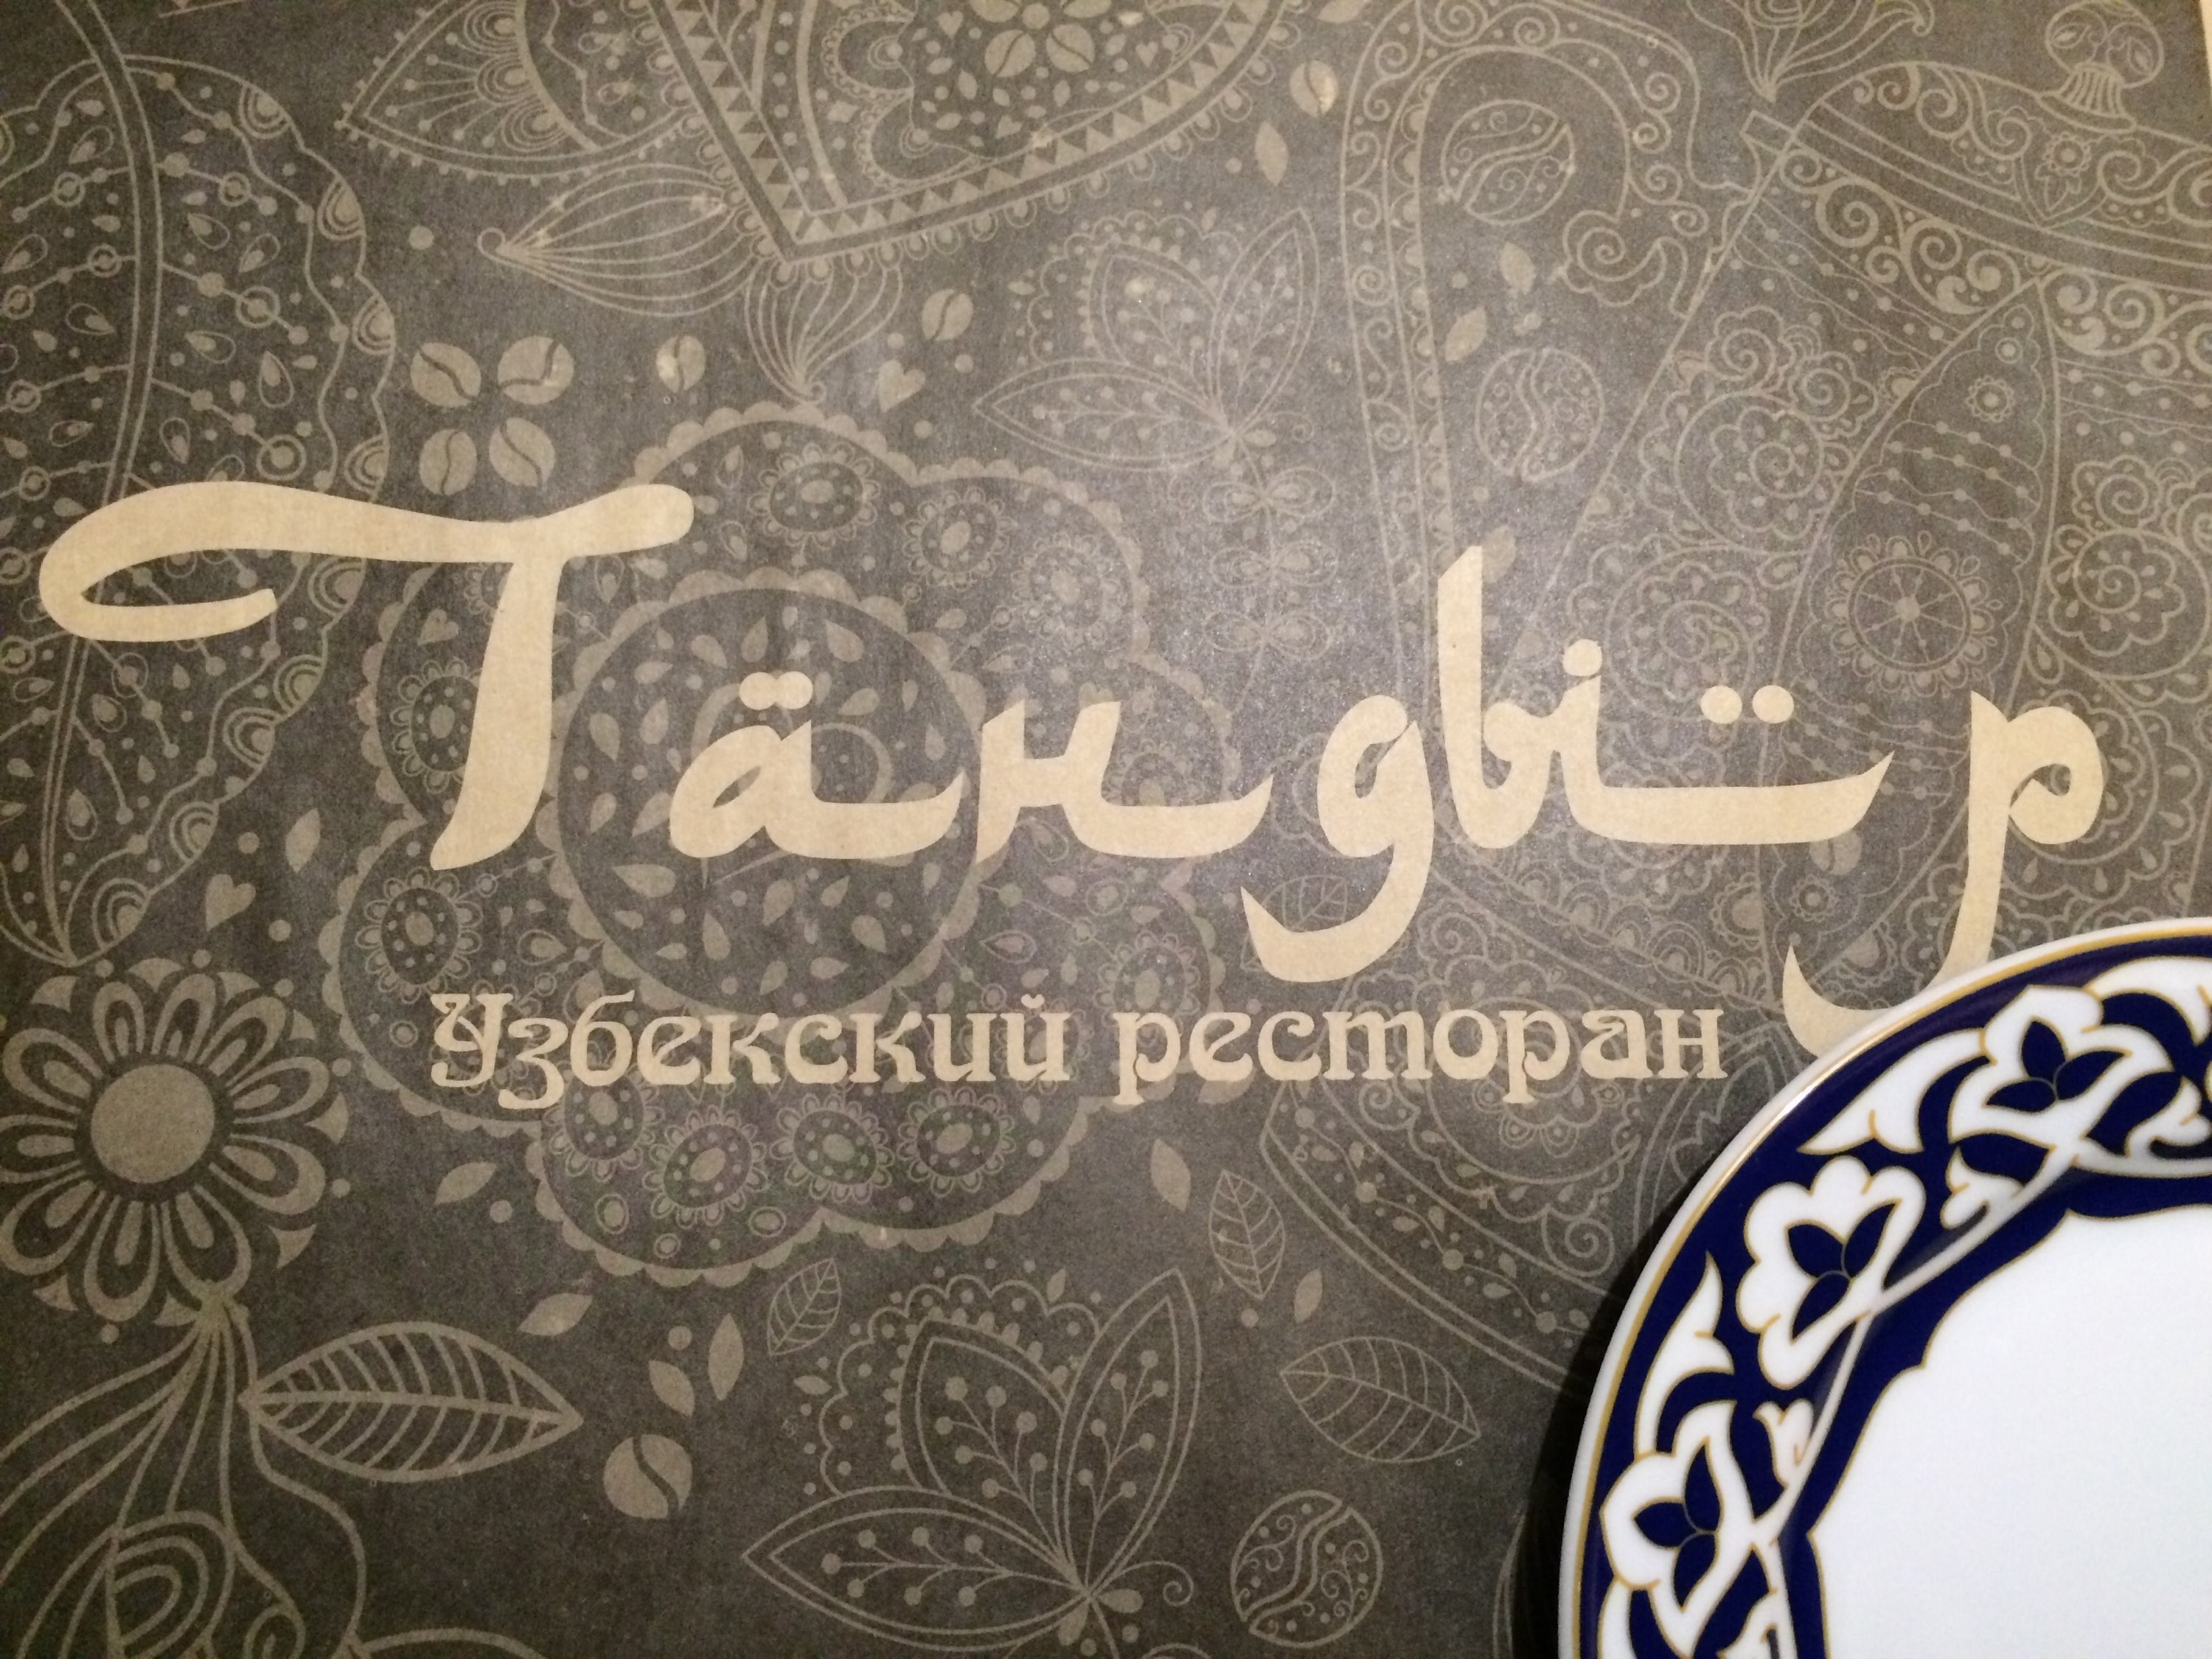 Восточные слоганы. Баннер для кафе Восточной кухни. Восточная кухня. Узбекская кухня баннер. Чайхана реклама.